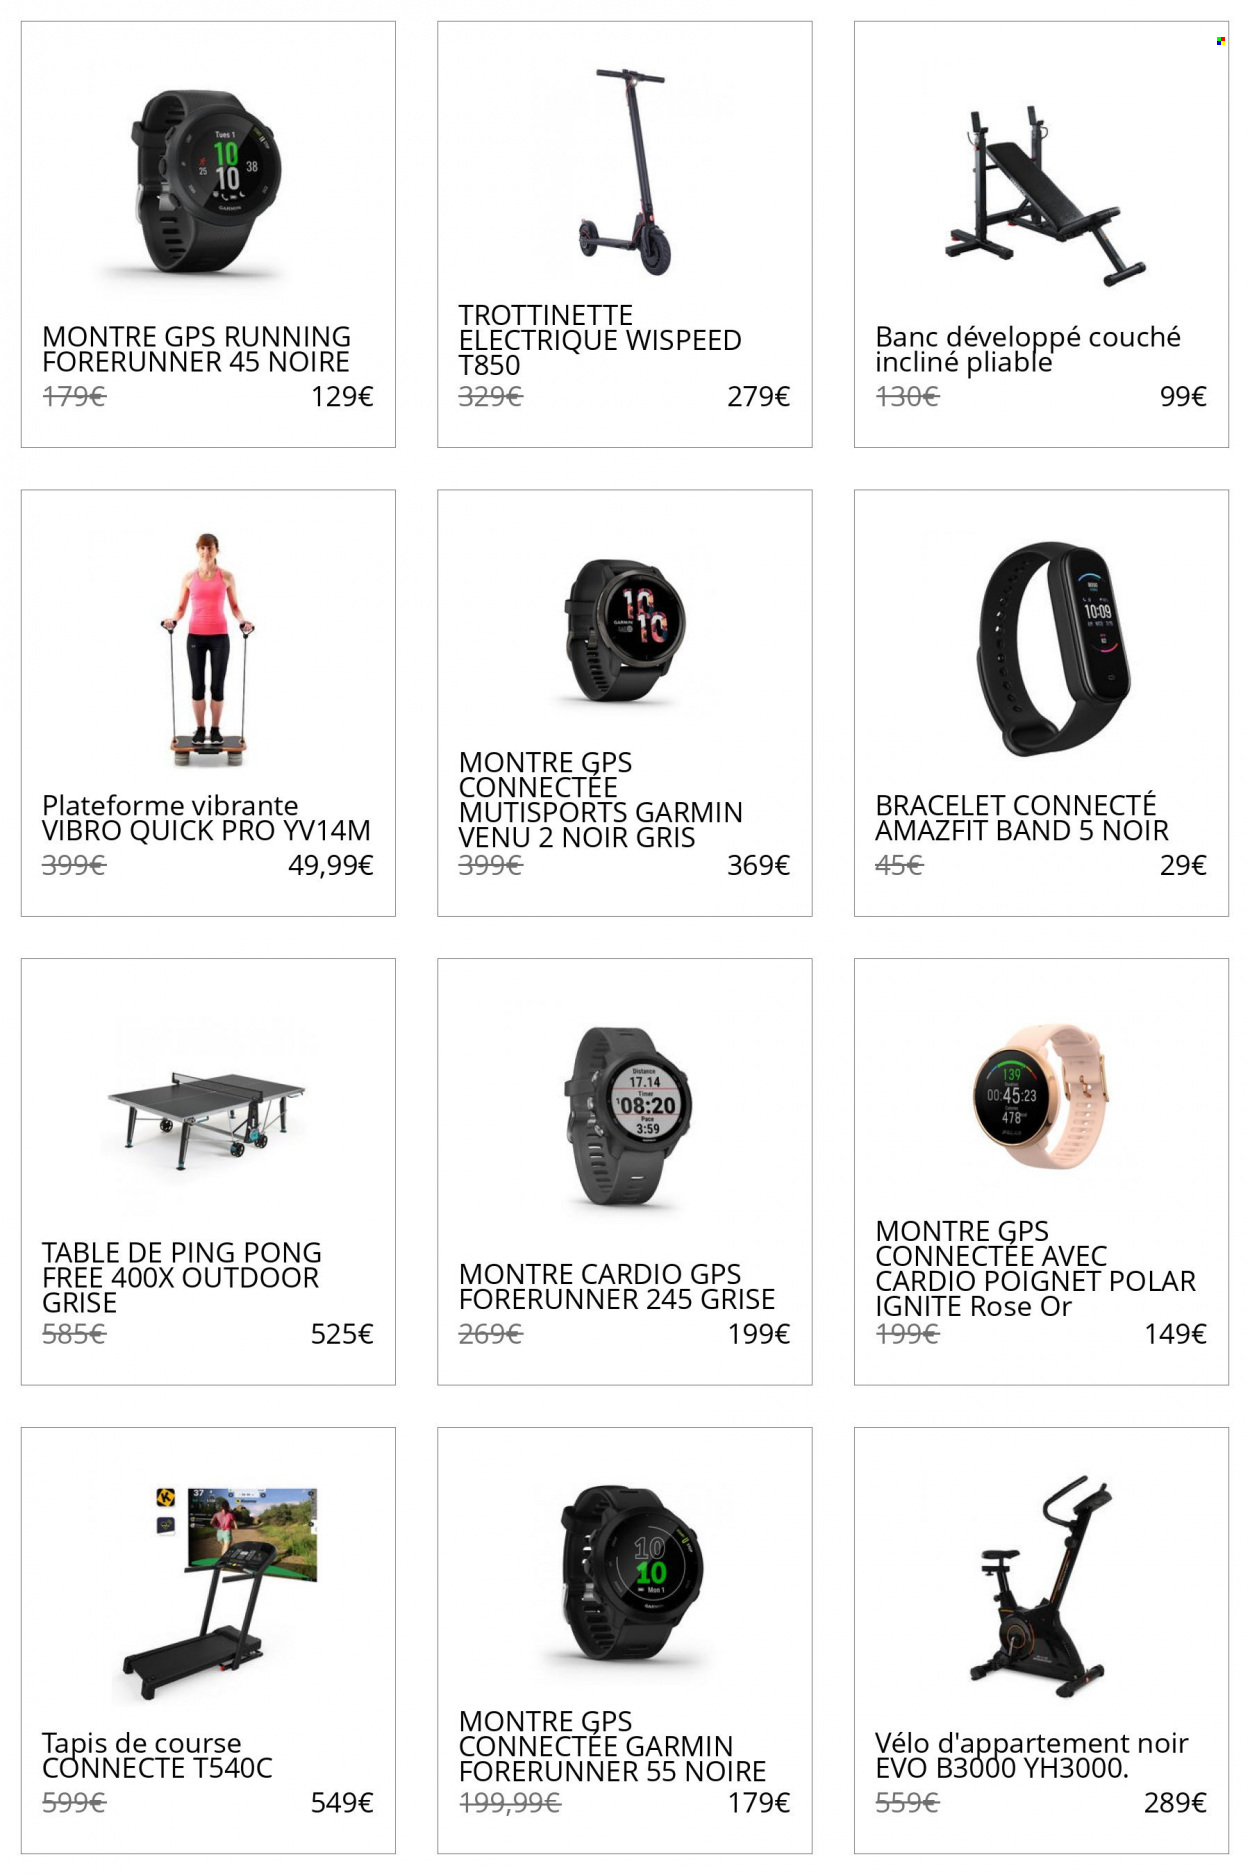 thumbnail - Catalogue Decathlon - Produits soldés - montre, Amazfit, trottinette, trottinette électrique, bracelet, vélo d'appartement. Page 1.